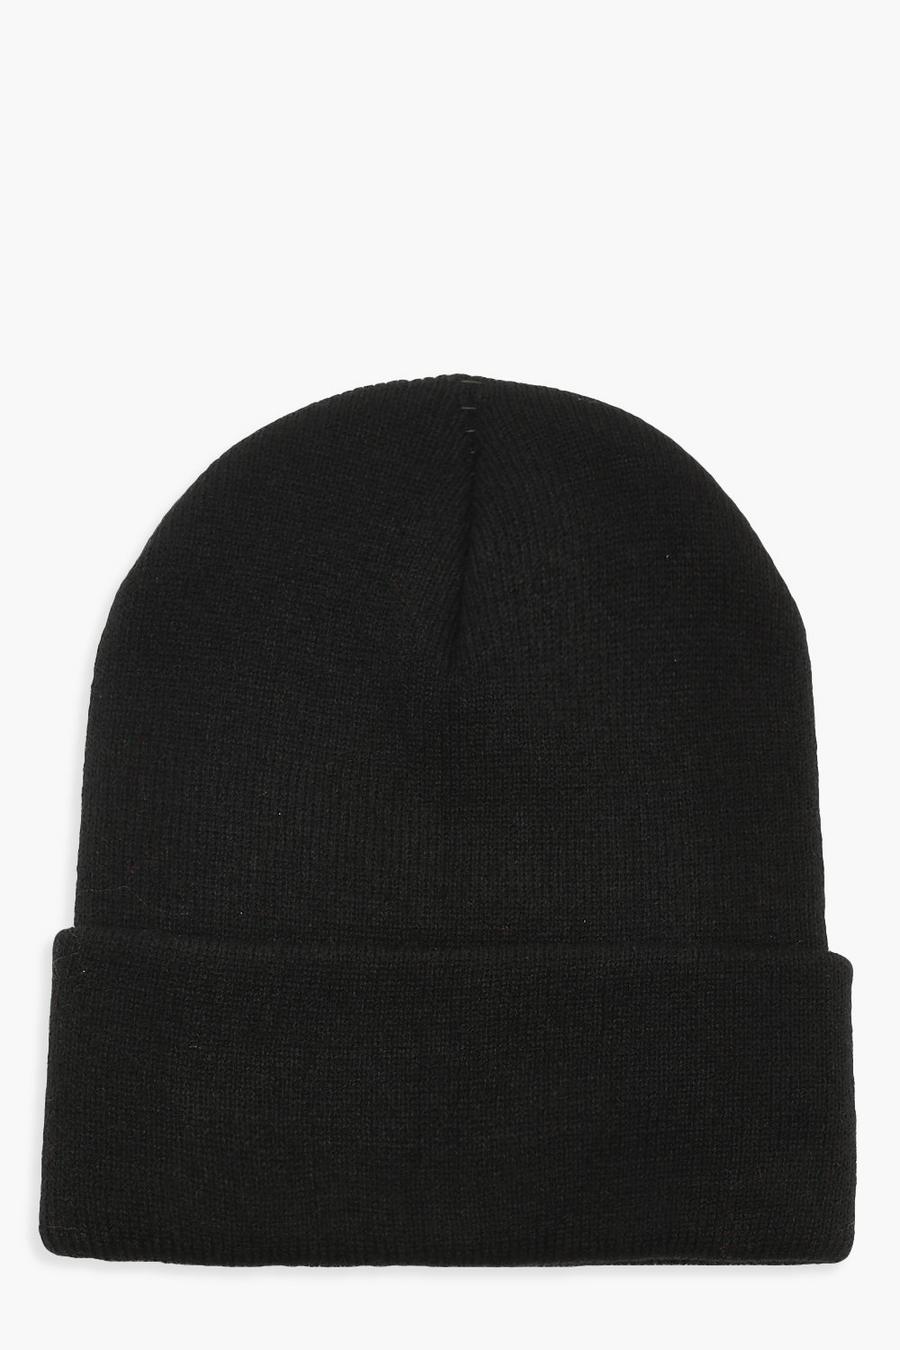 שחור black כובע צמר סרוג בייסיק